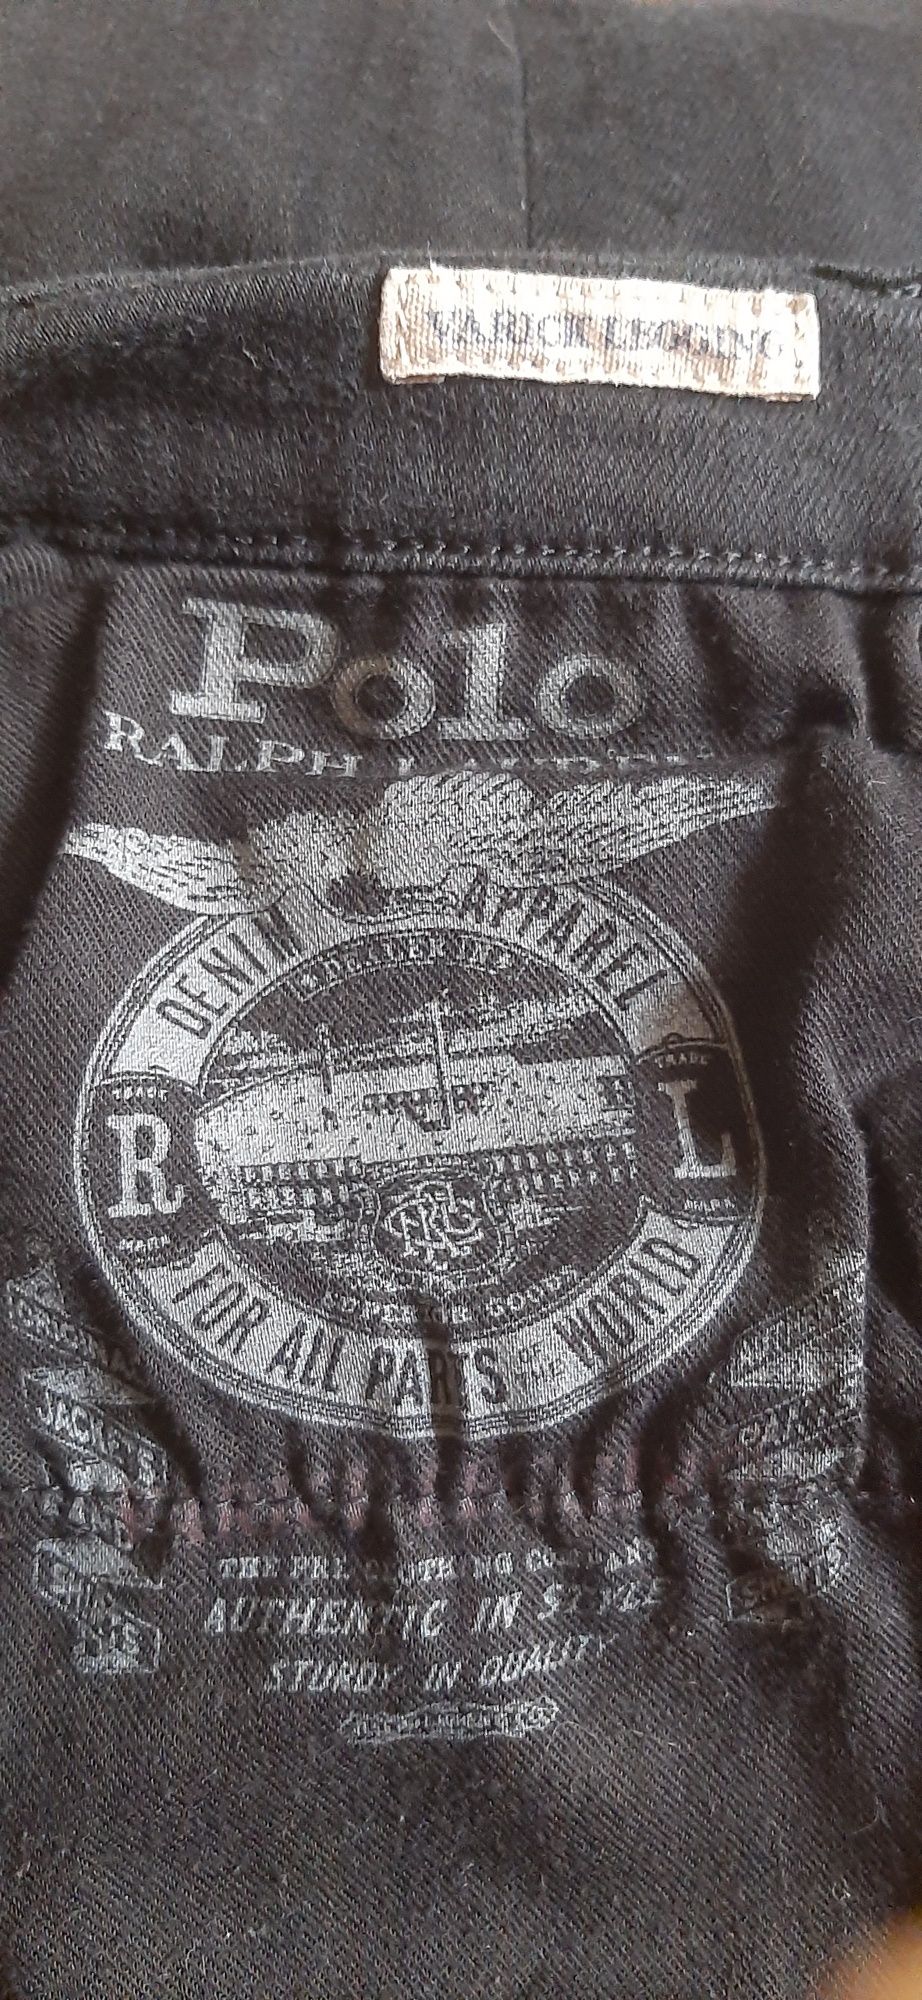 Polo Ralph Lauren spodnie czarne biodrówki vintage retro skinny XS S